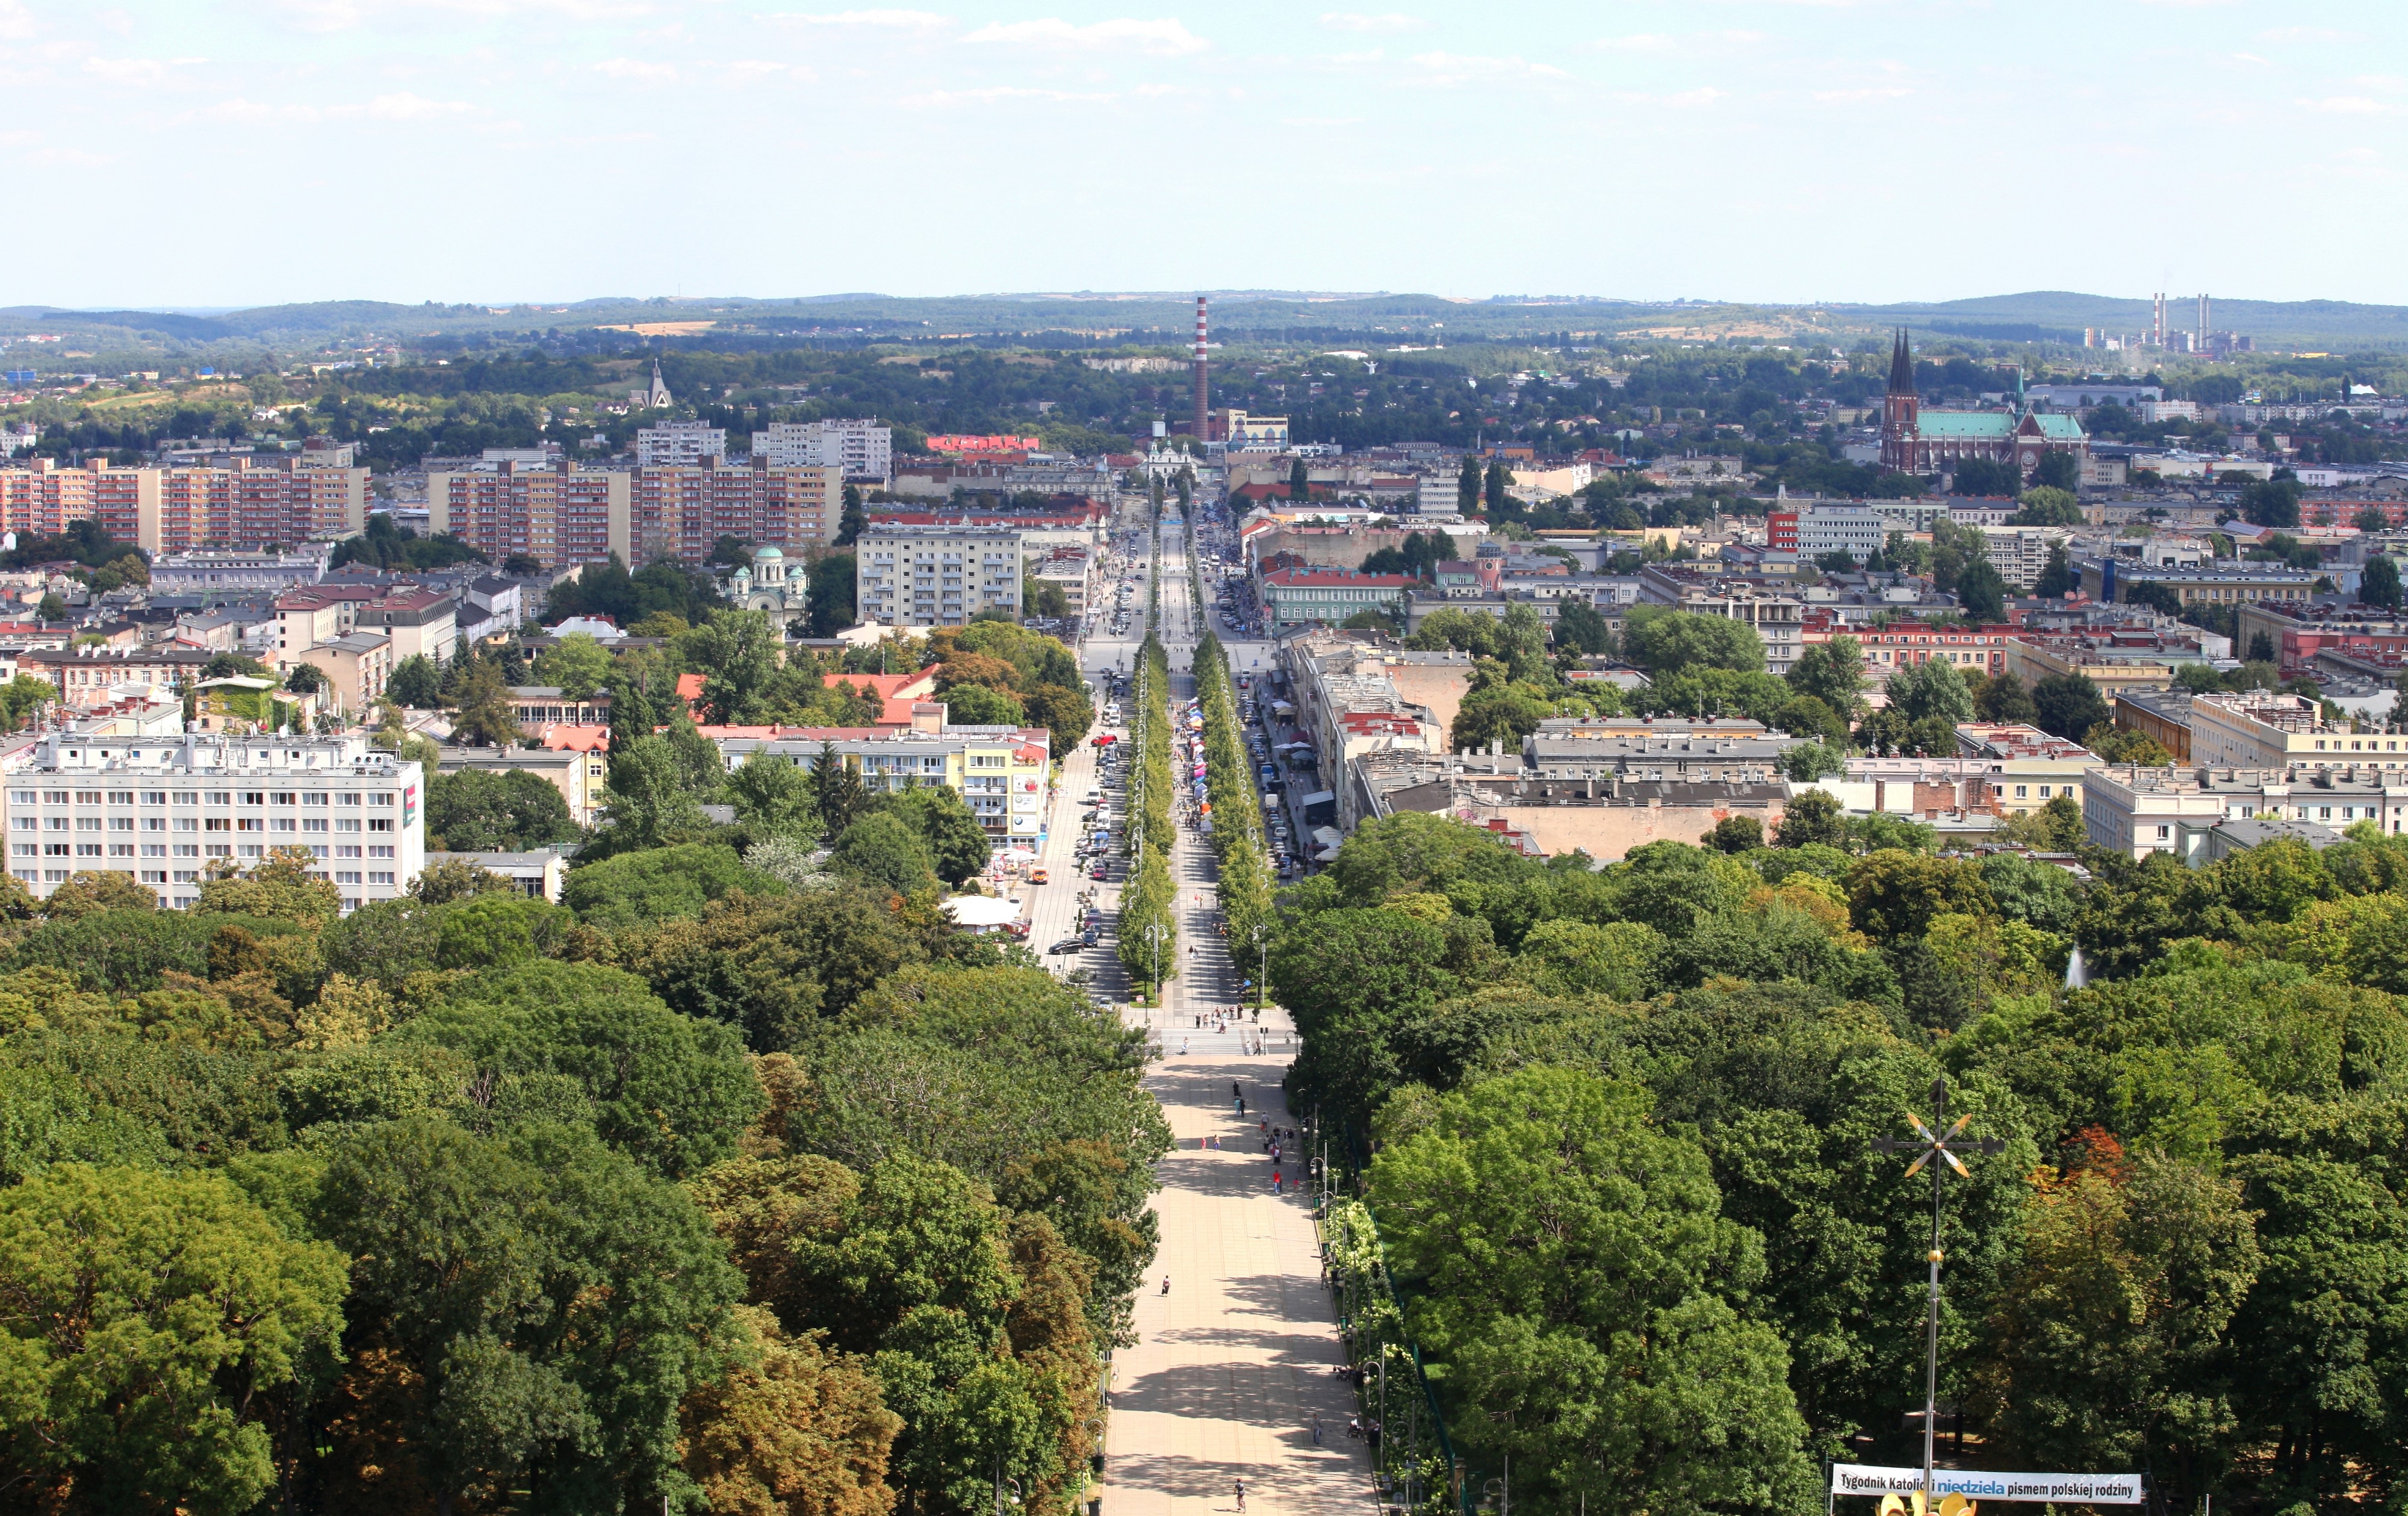 Czestochowa city in August 2013, Poland, EU, picture 14/21